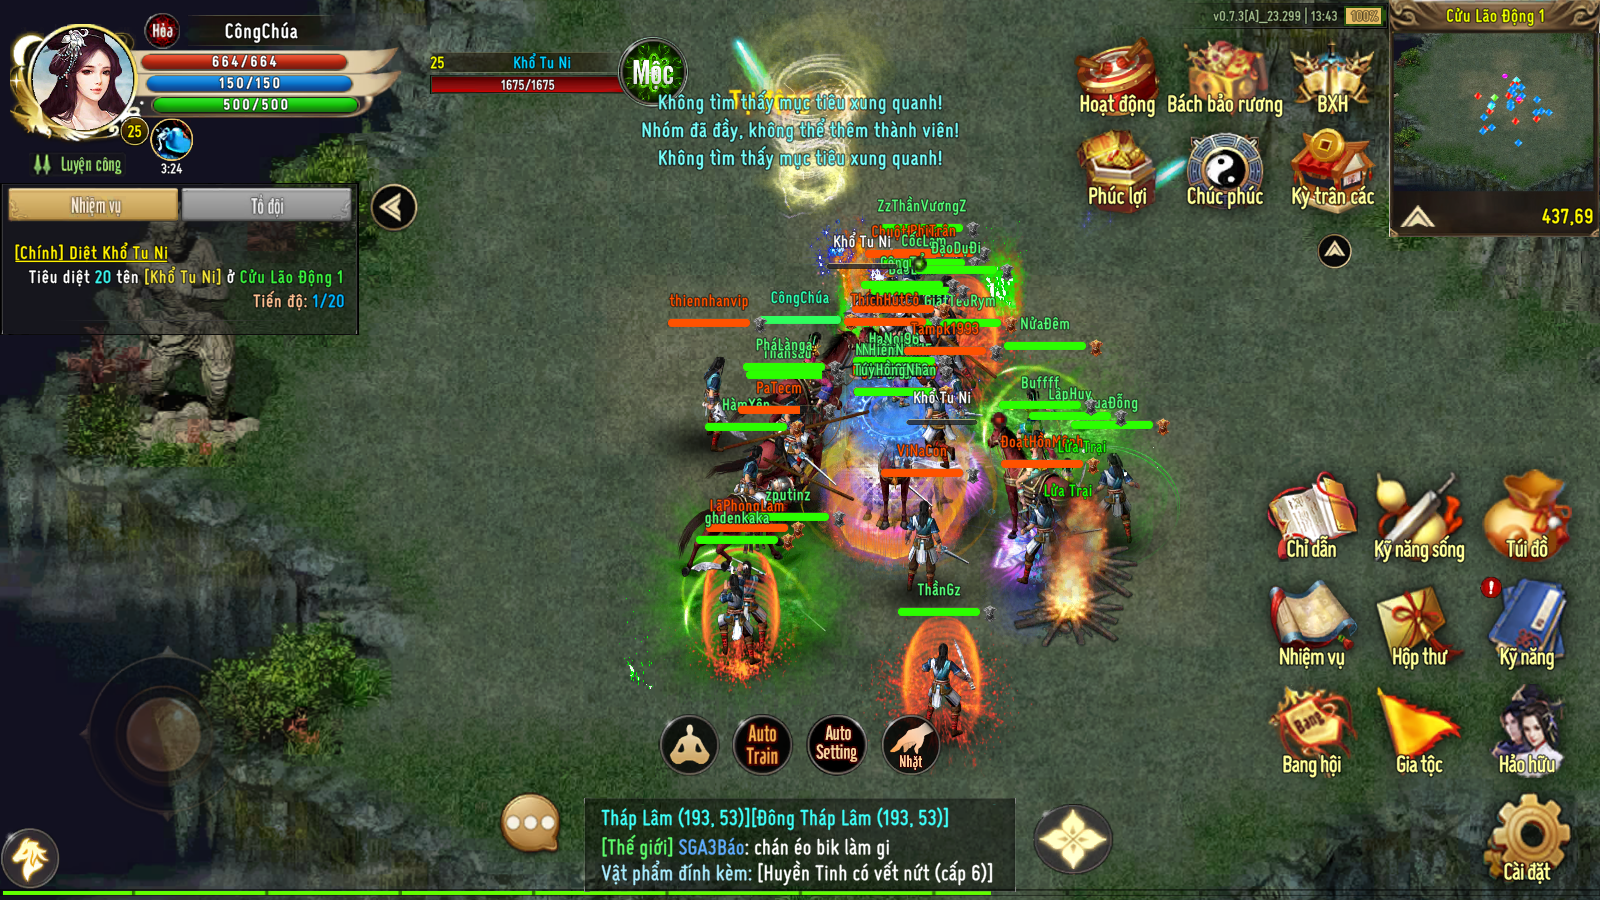 Hình ảnh vui tươi của Kiếm Vương 1 - ADNX Mobile gợi nhớ về một thời thanh xuân của nhiều game thủ - Ảnh 4.